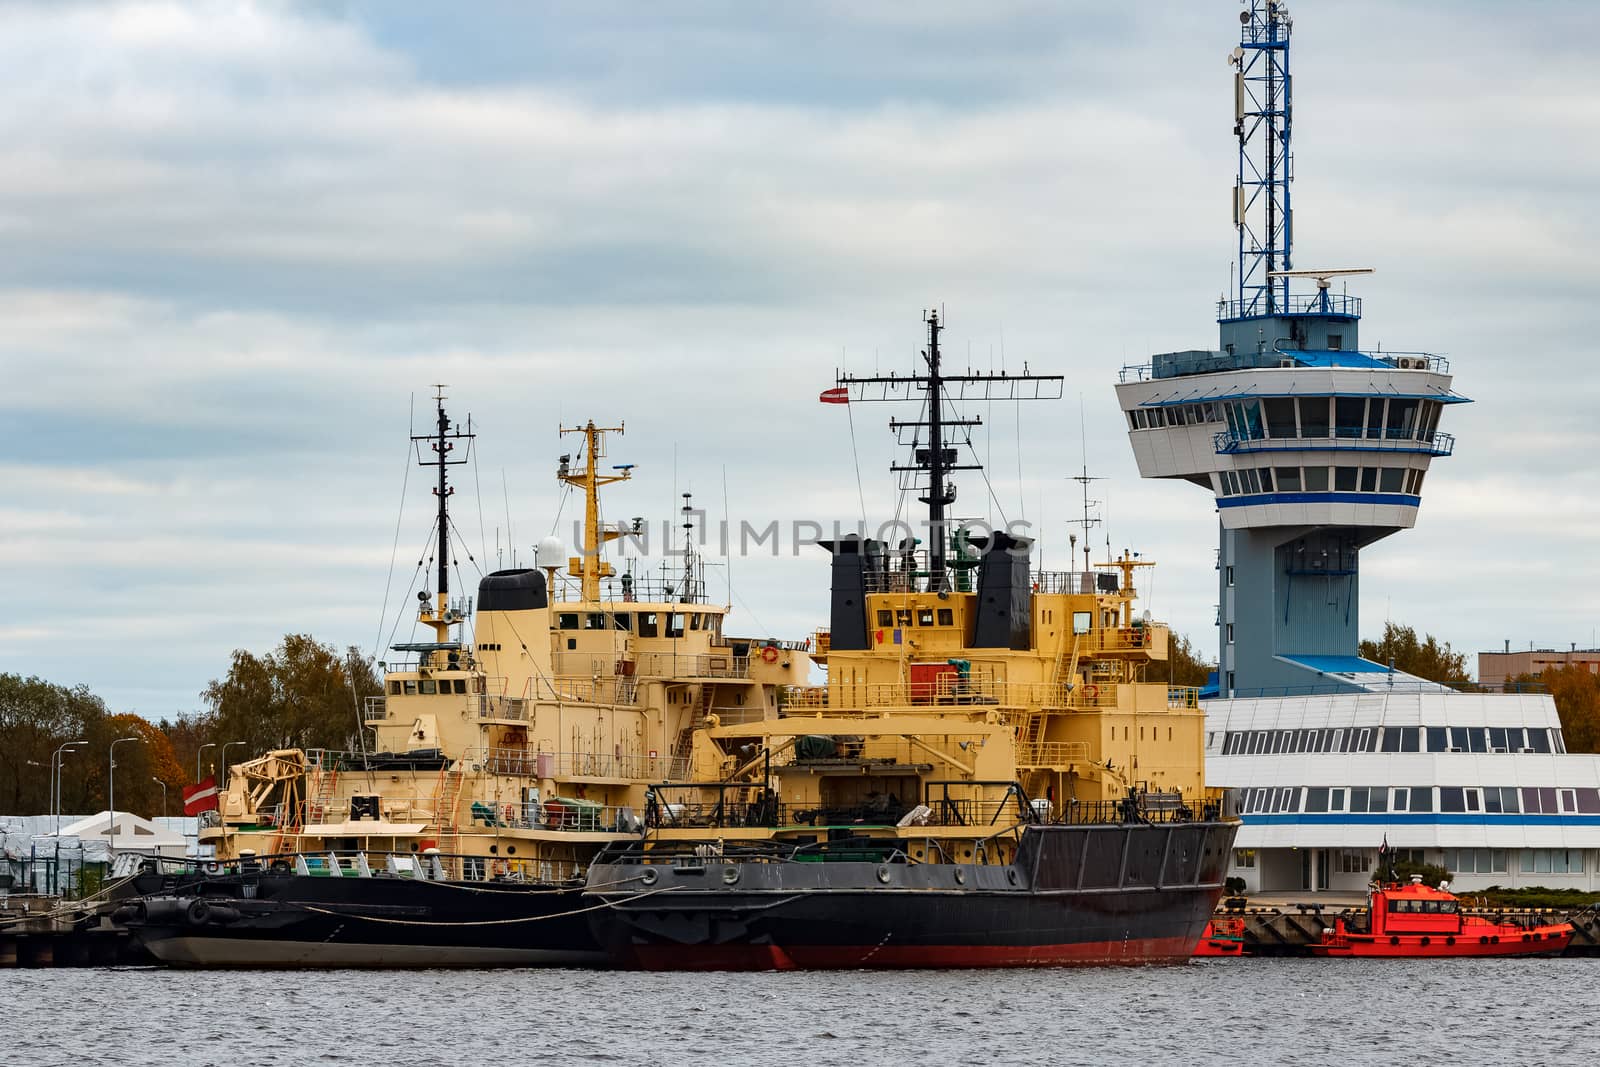 Yellow icebreakers moored by sengnsp